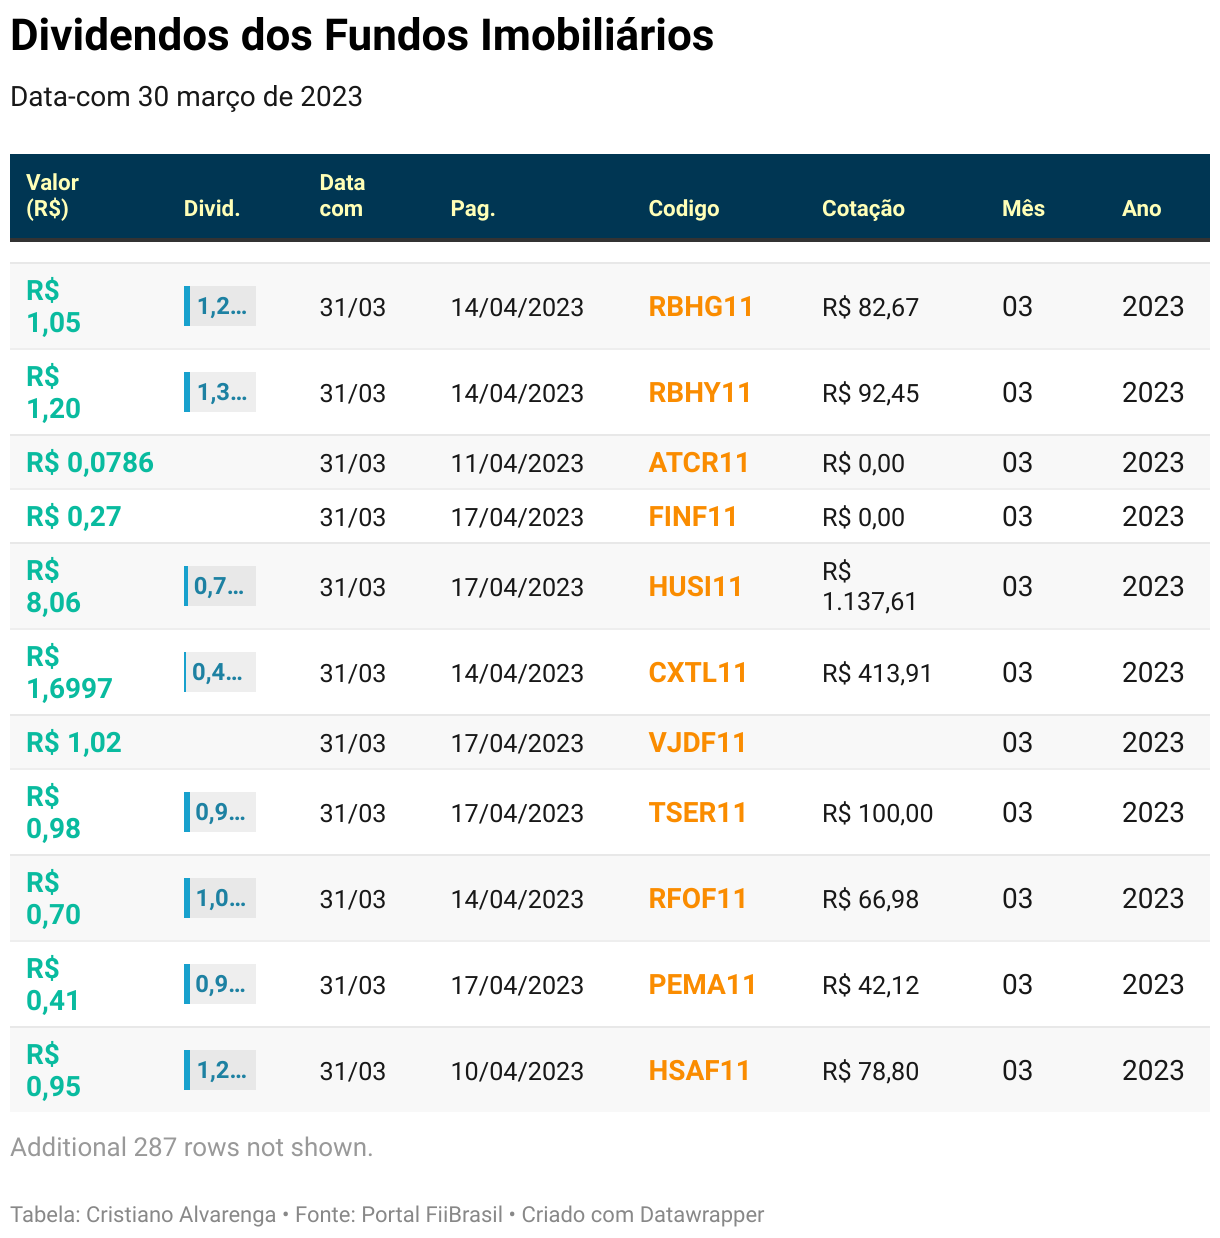 Tabela com o histórico de dividendos distribuídos pelos Fundos de Investimento Imobiliário no Brasil